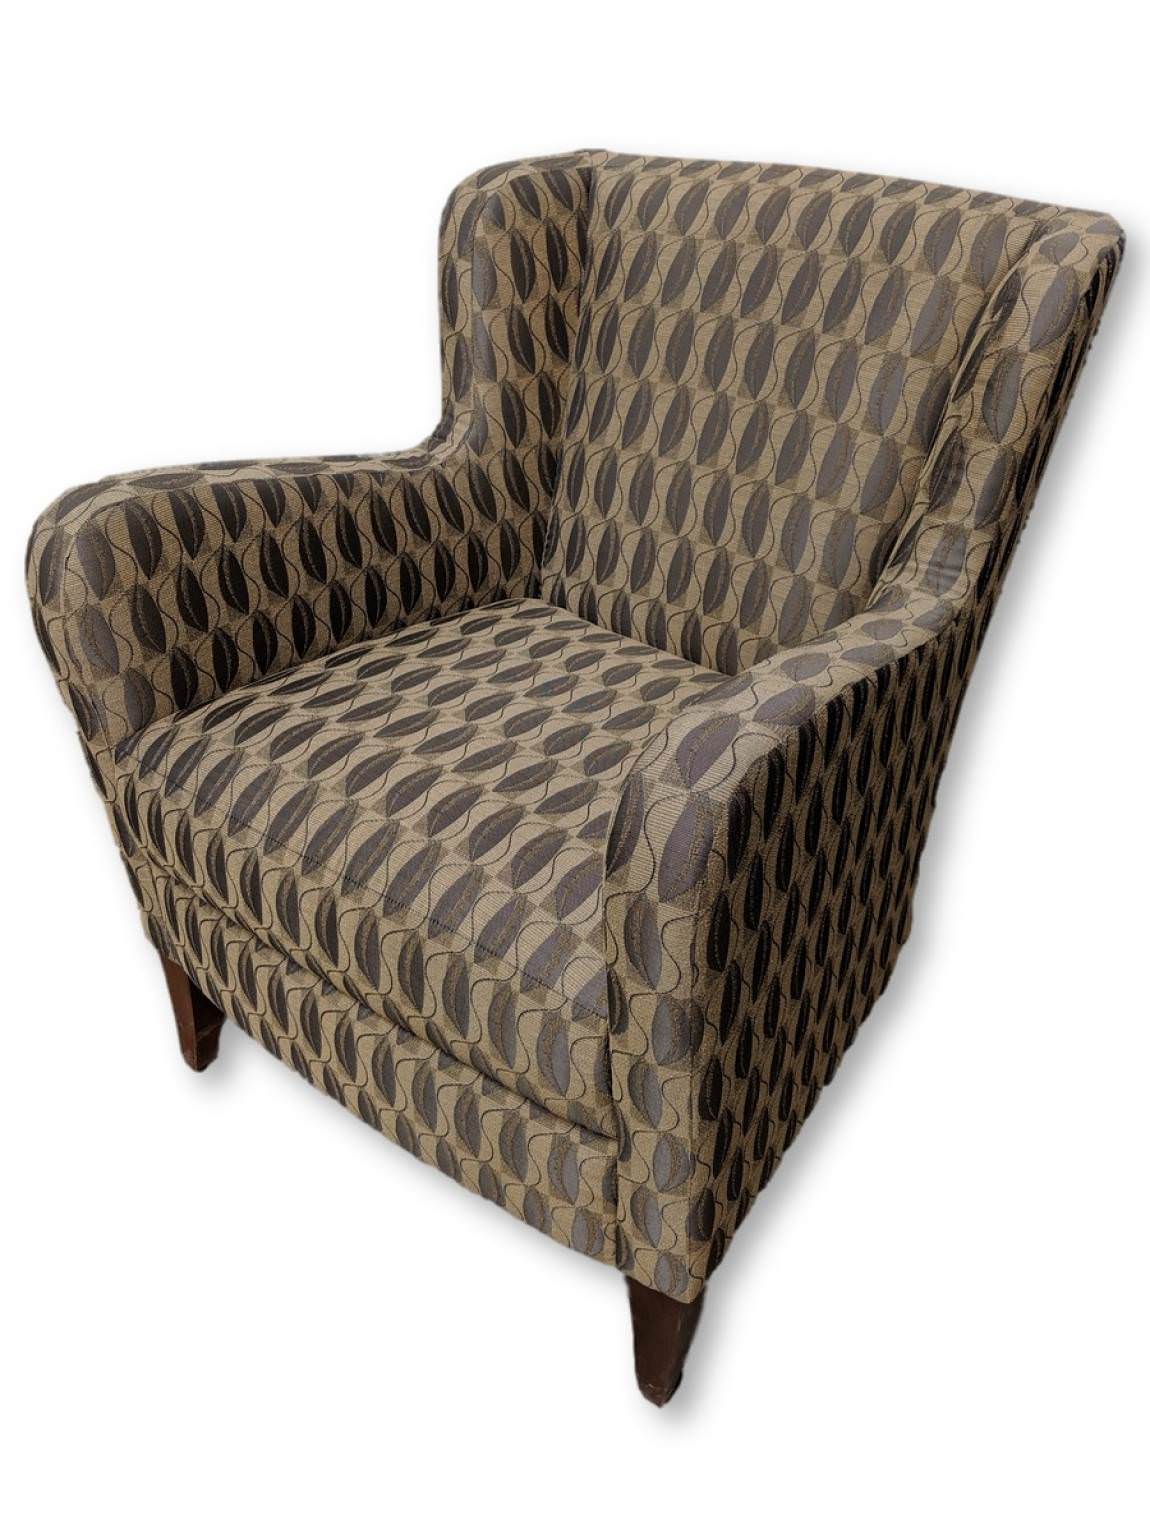 Bernhardt Club Chair with Leaf Pattern